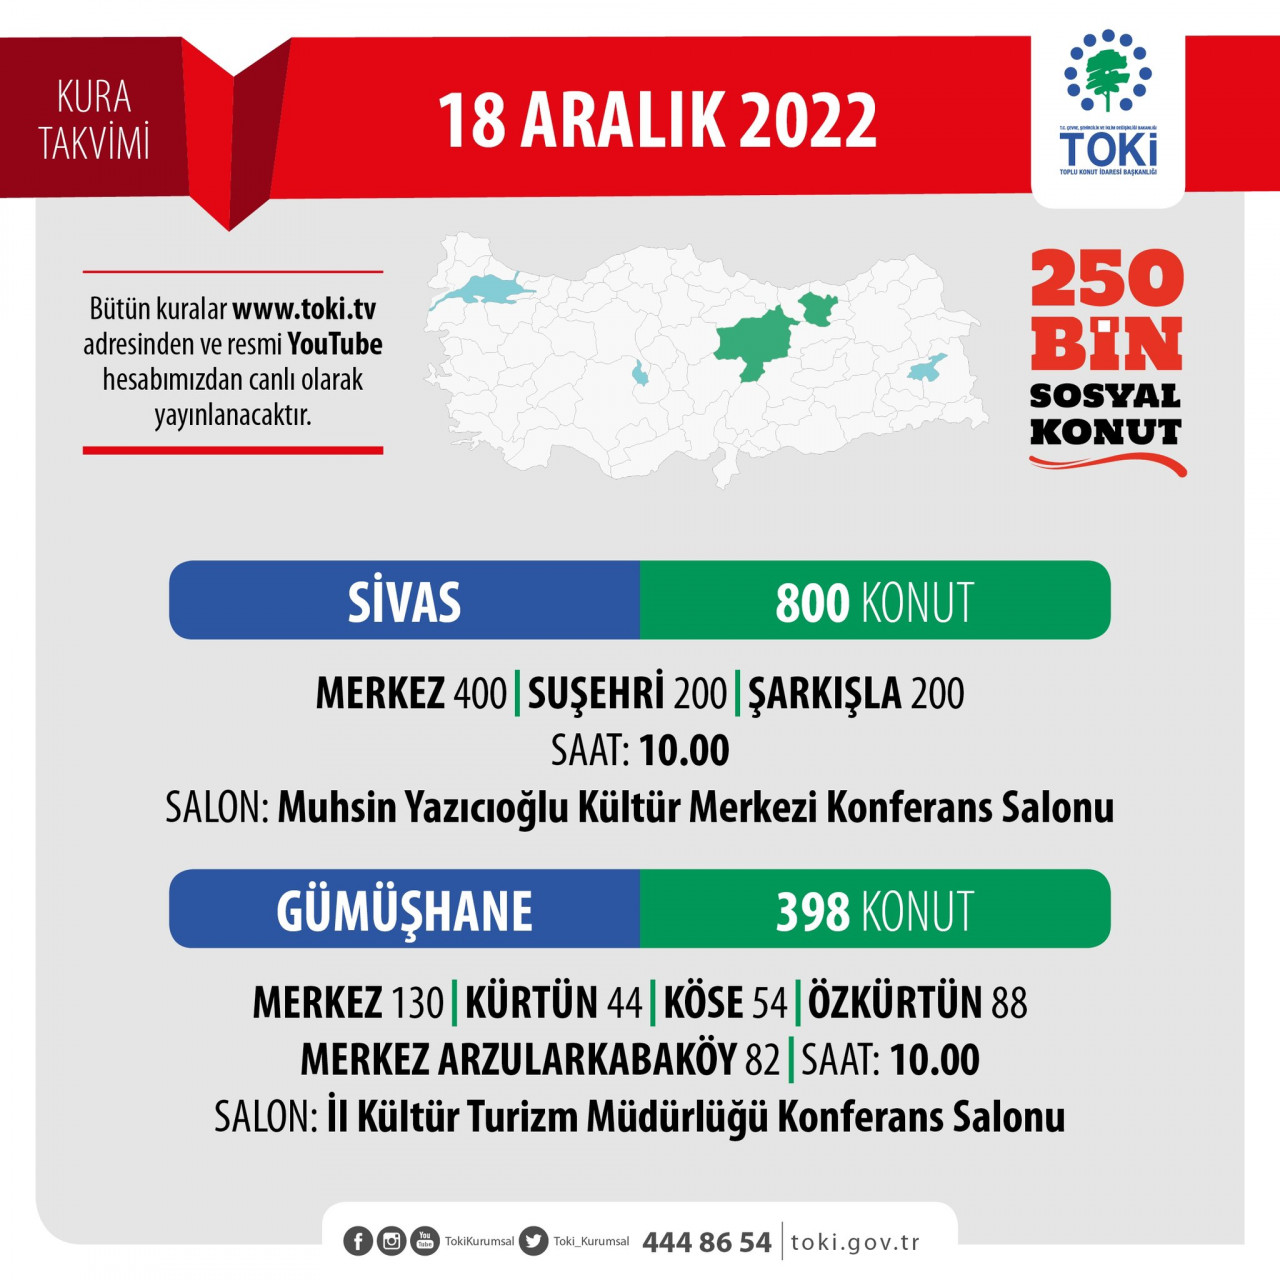 TOKİ Sivas Merkez, Suşehri, Şarkışla 800 sosyal konut kura sonucu sorgulama 18 Aralık 2022!